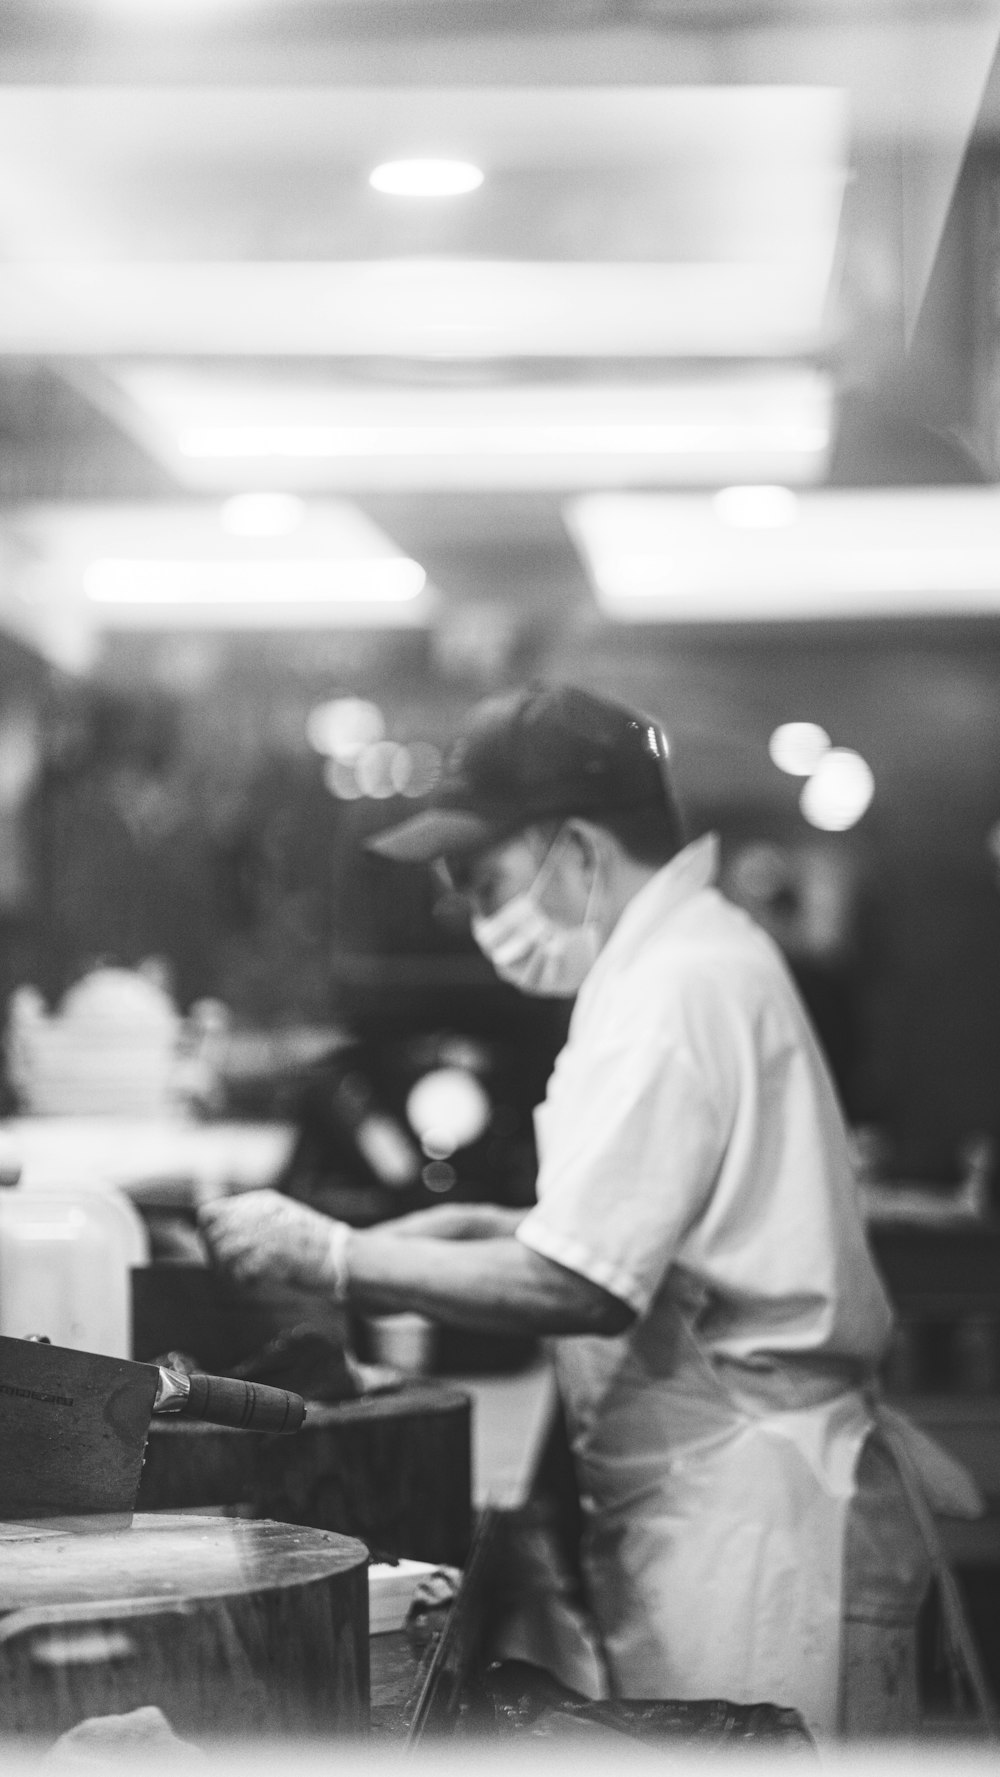 Ein Schwarz-Weiß-Foto eines Mannes, der in einem Restaurant arbeitet